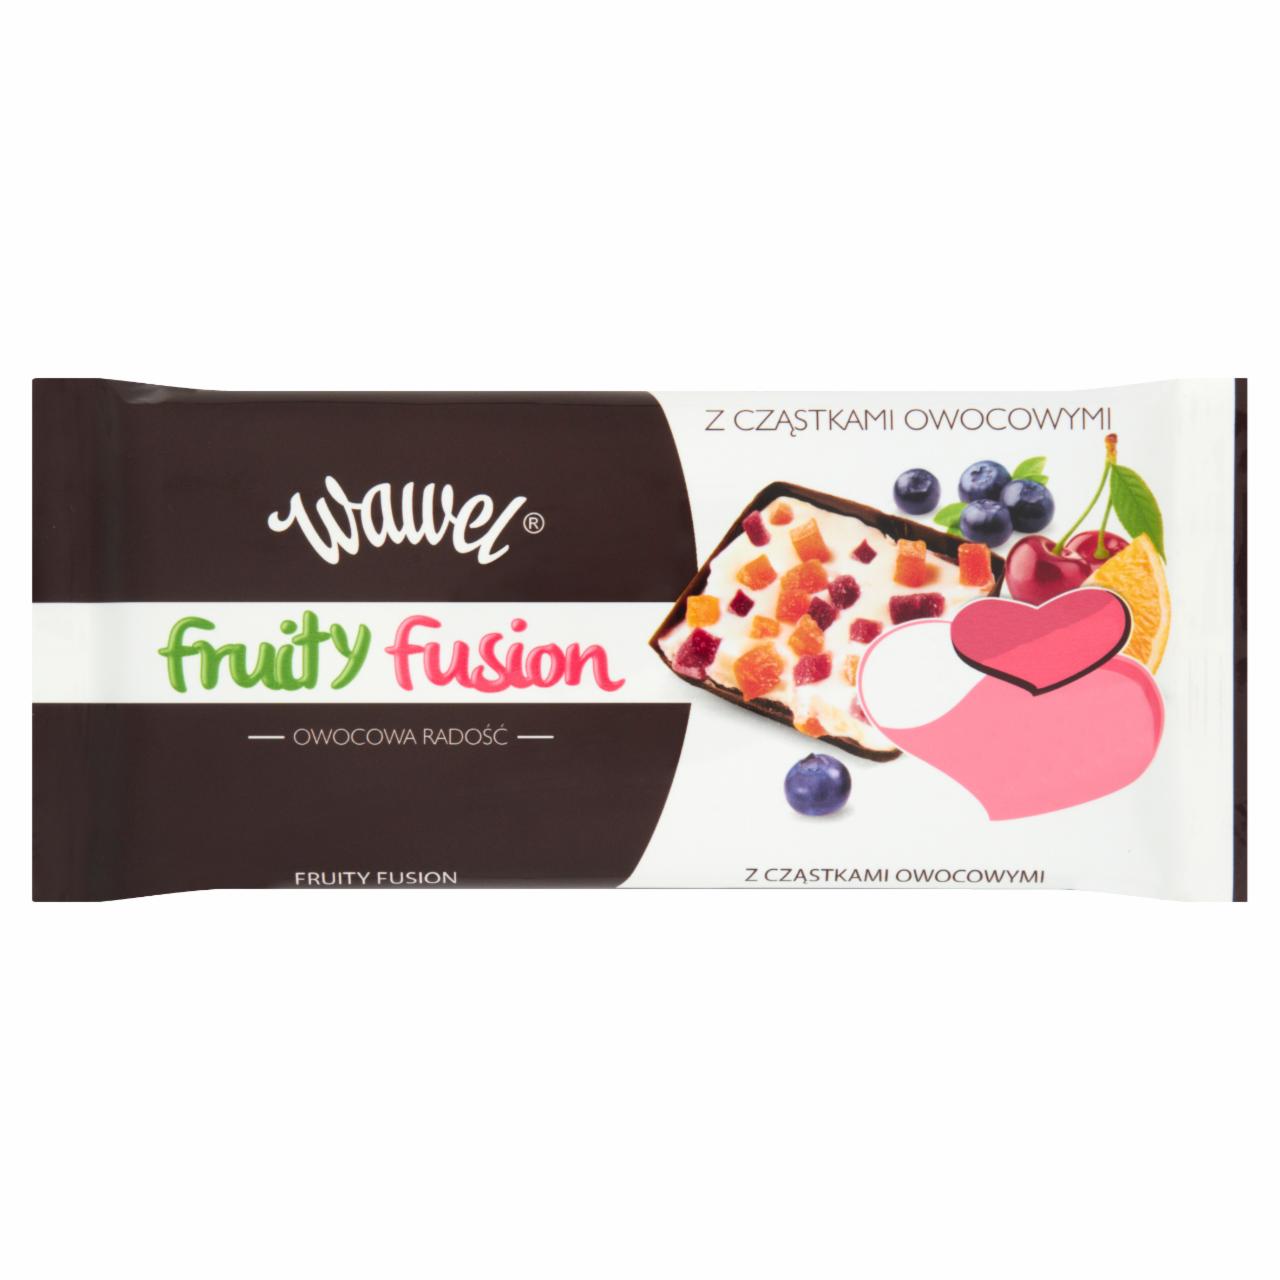 Zdjęcia - Wawel Fruity Fusion Wyrób cukierniczy z czekoladą deserową i cząstkami owocowymi 100 g